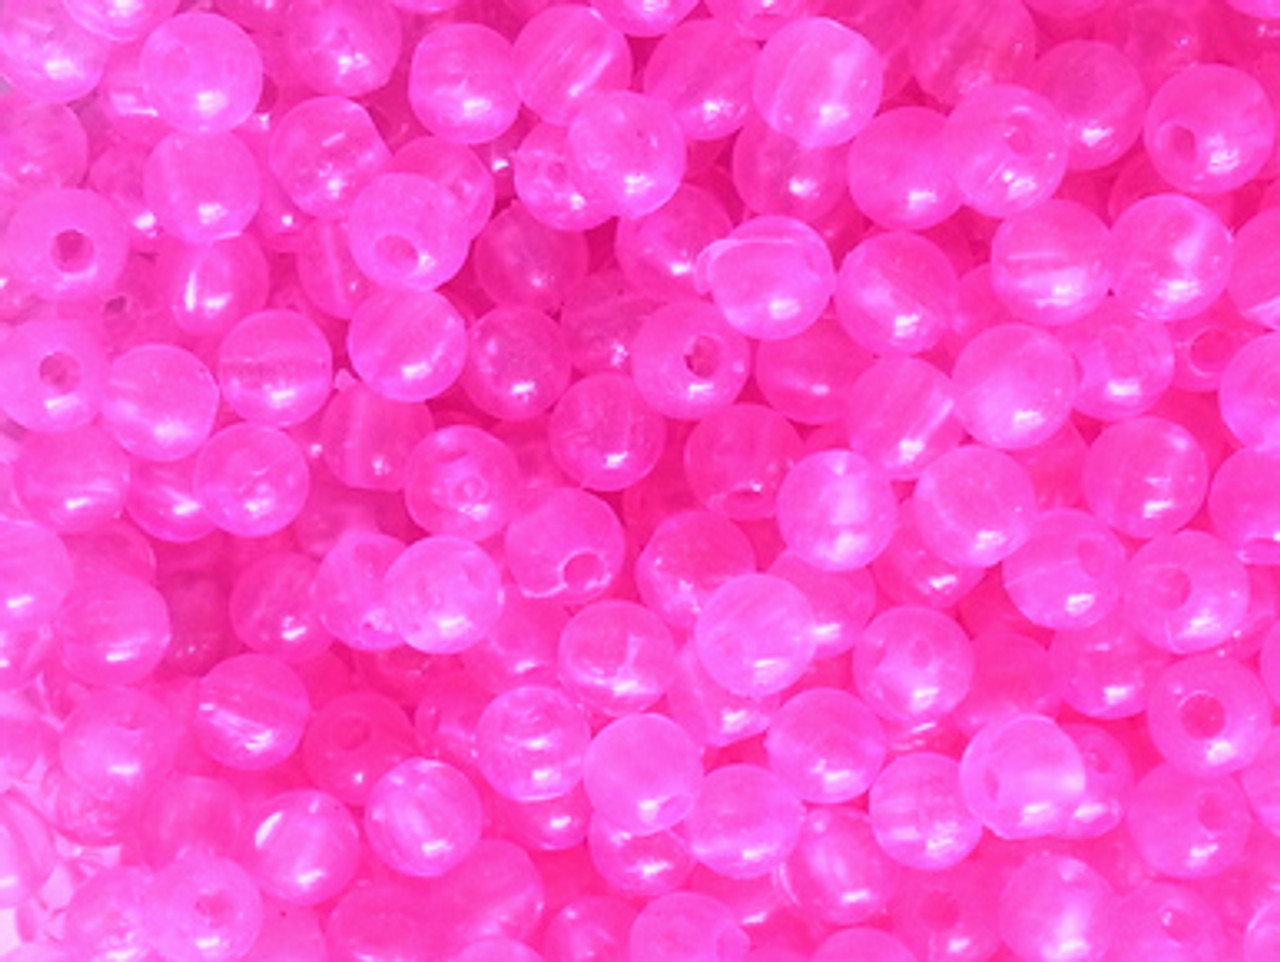 Lumi Beads 6mm round Luminous Sea Fishing Beads - Yellow Green Red/Pink